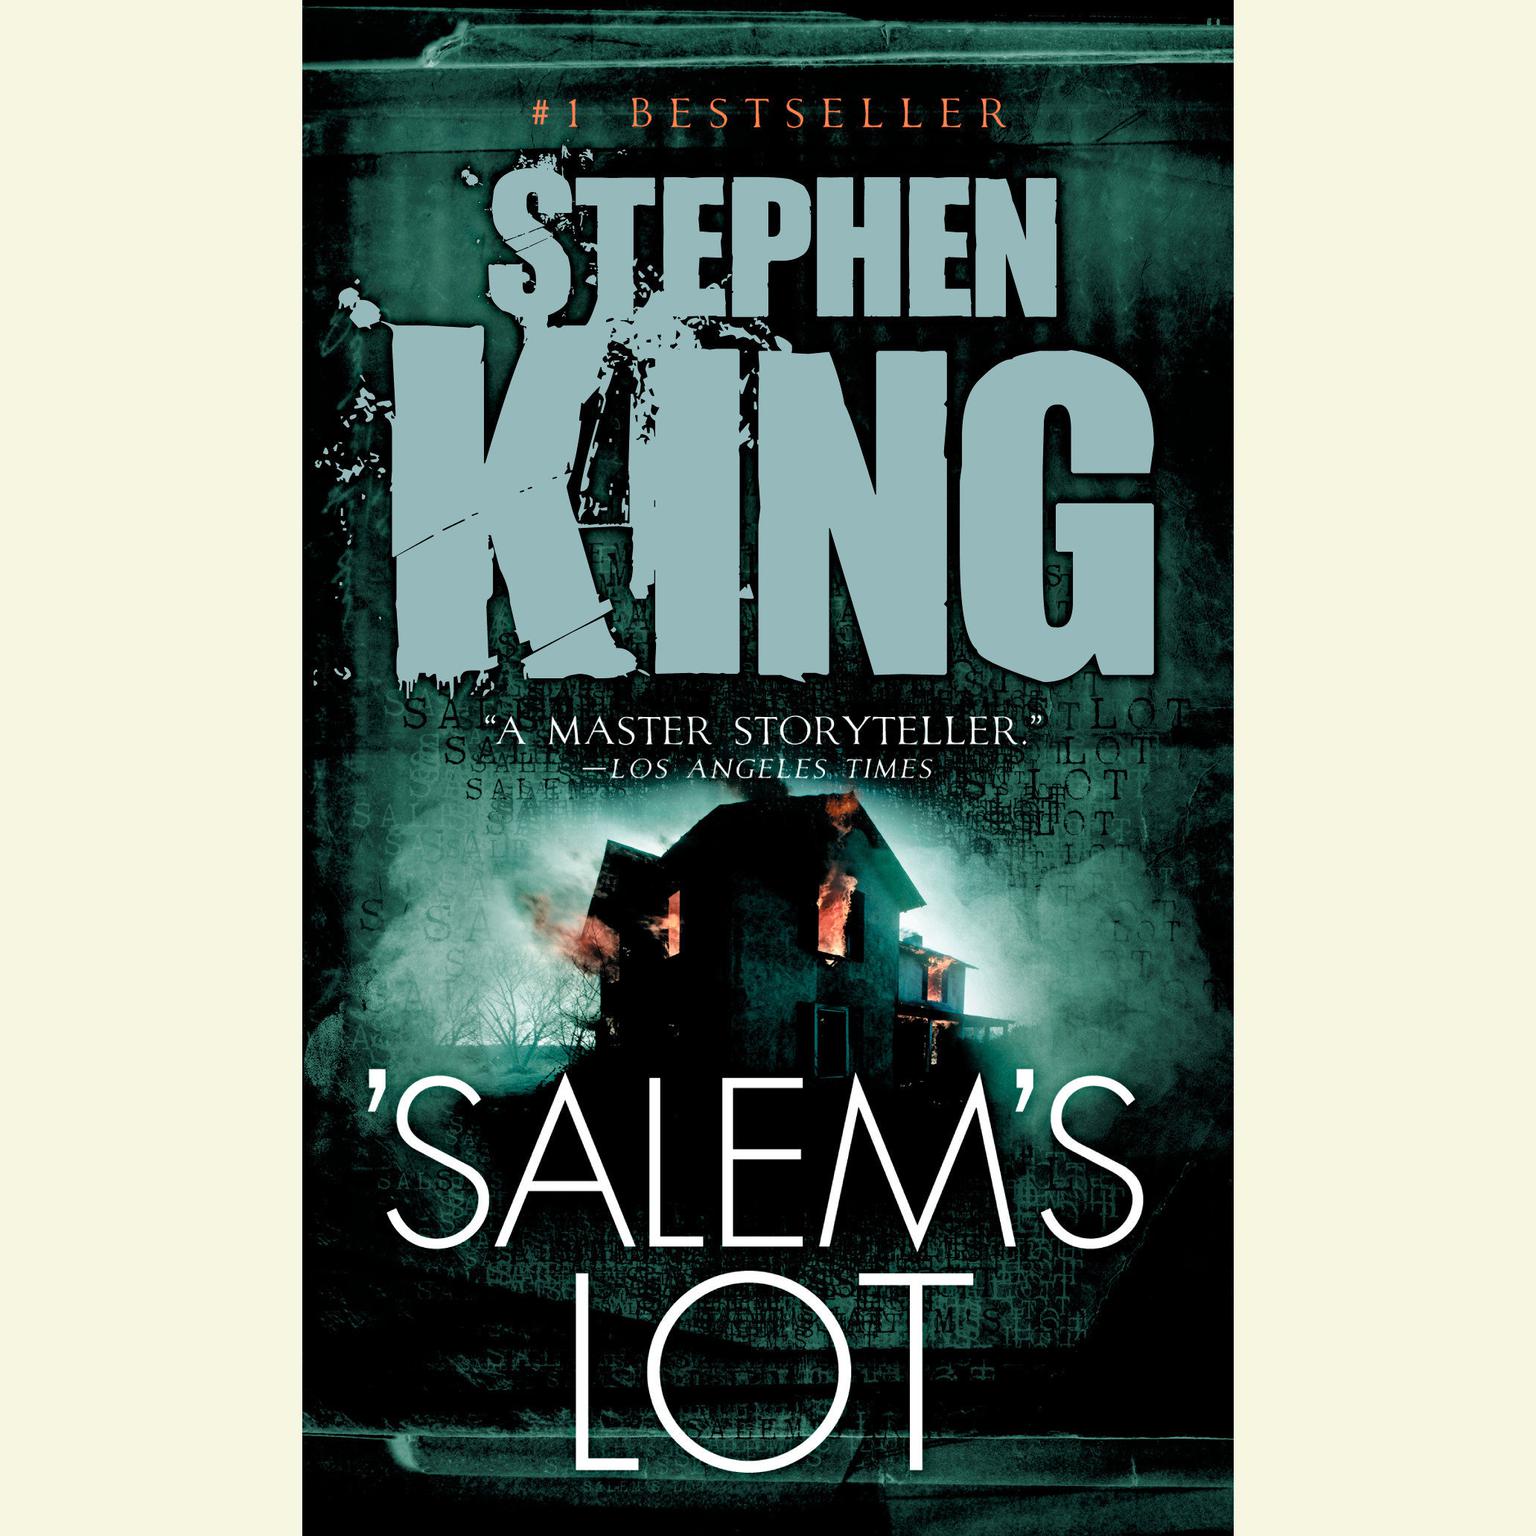 Salems Lot (Movie Tie-in) Audiobook, by Stephen King